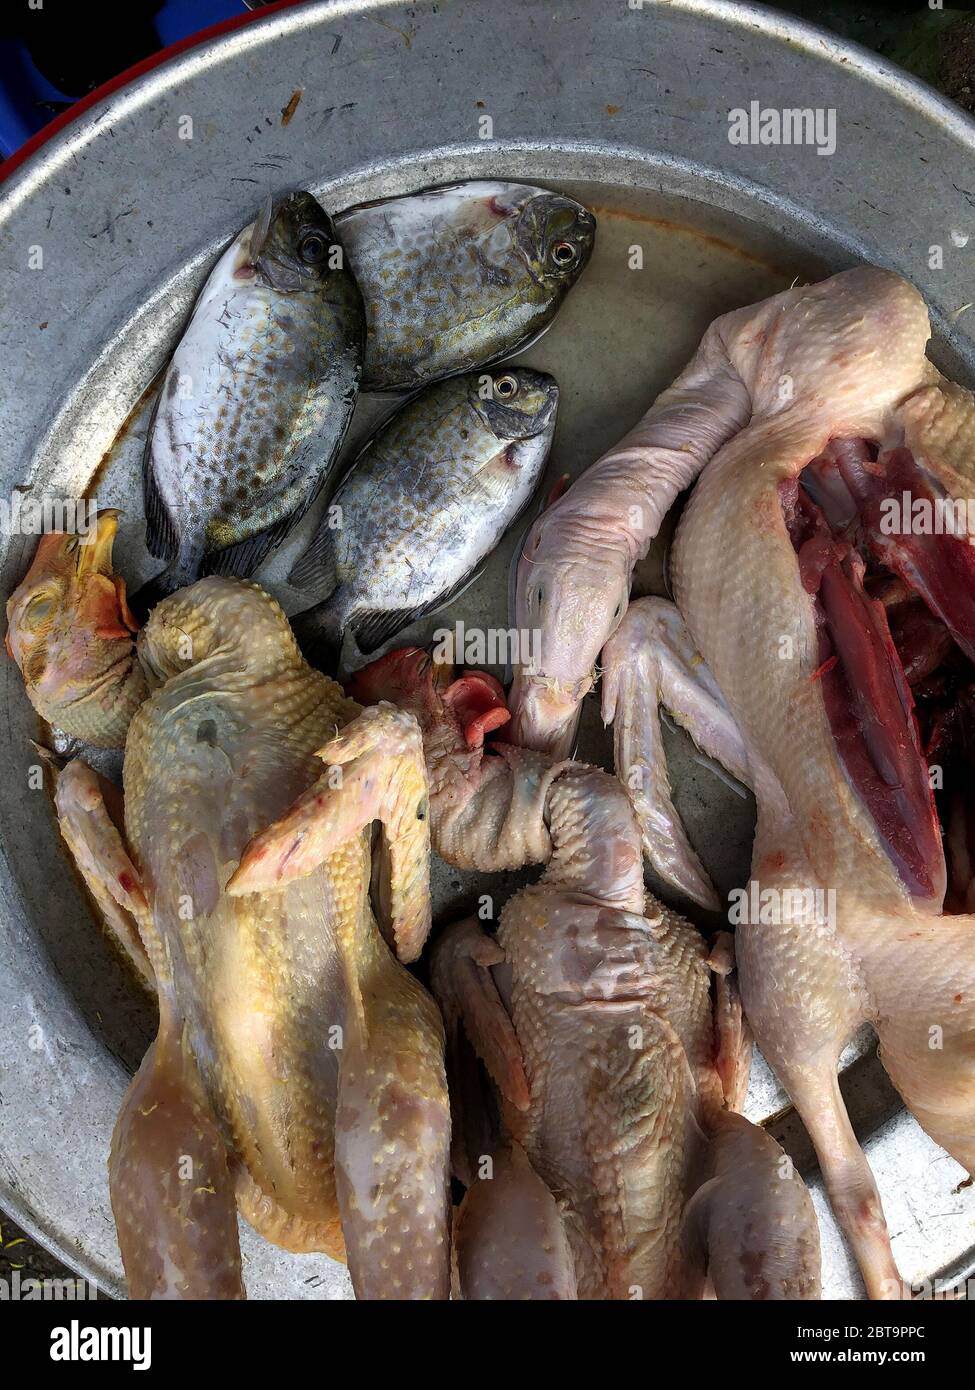 Vue de dessus sur le poisson en vrac, le canard et le poulet à vendre au marché de Hue, Vietnam, asie Banque D'Images